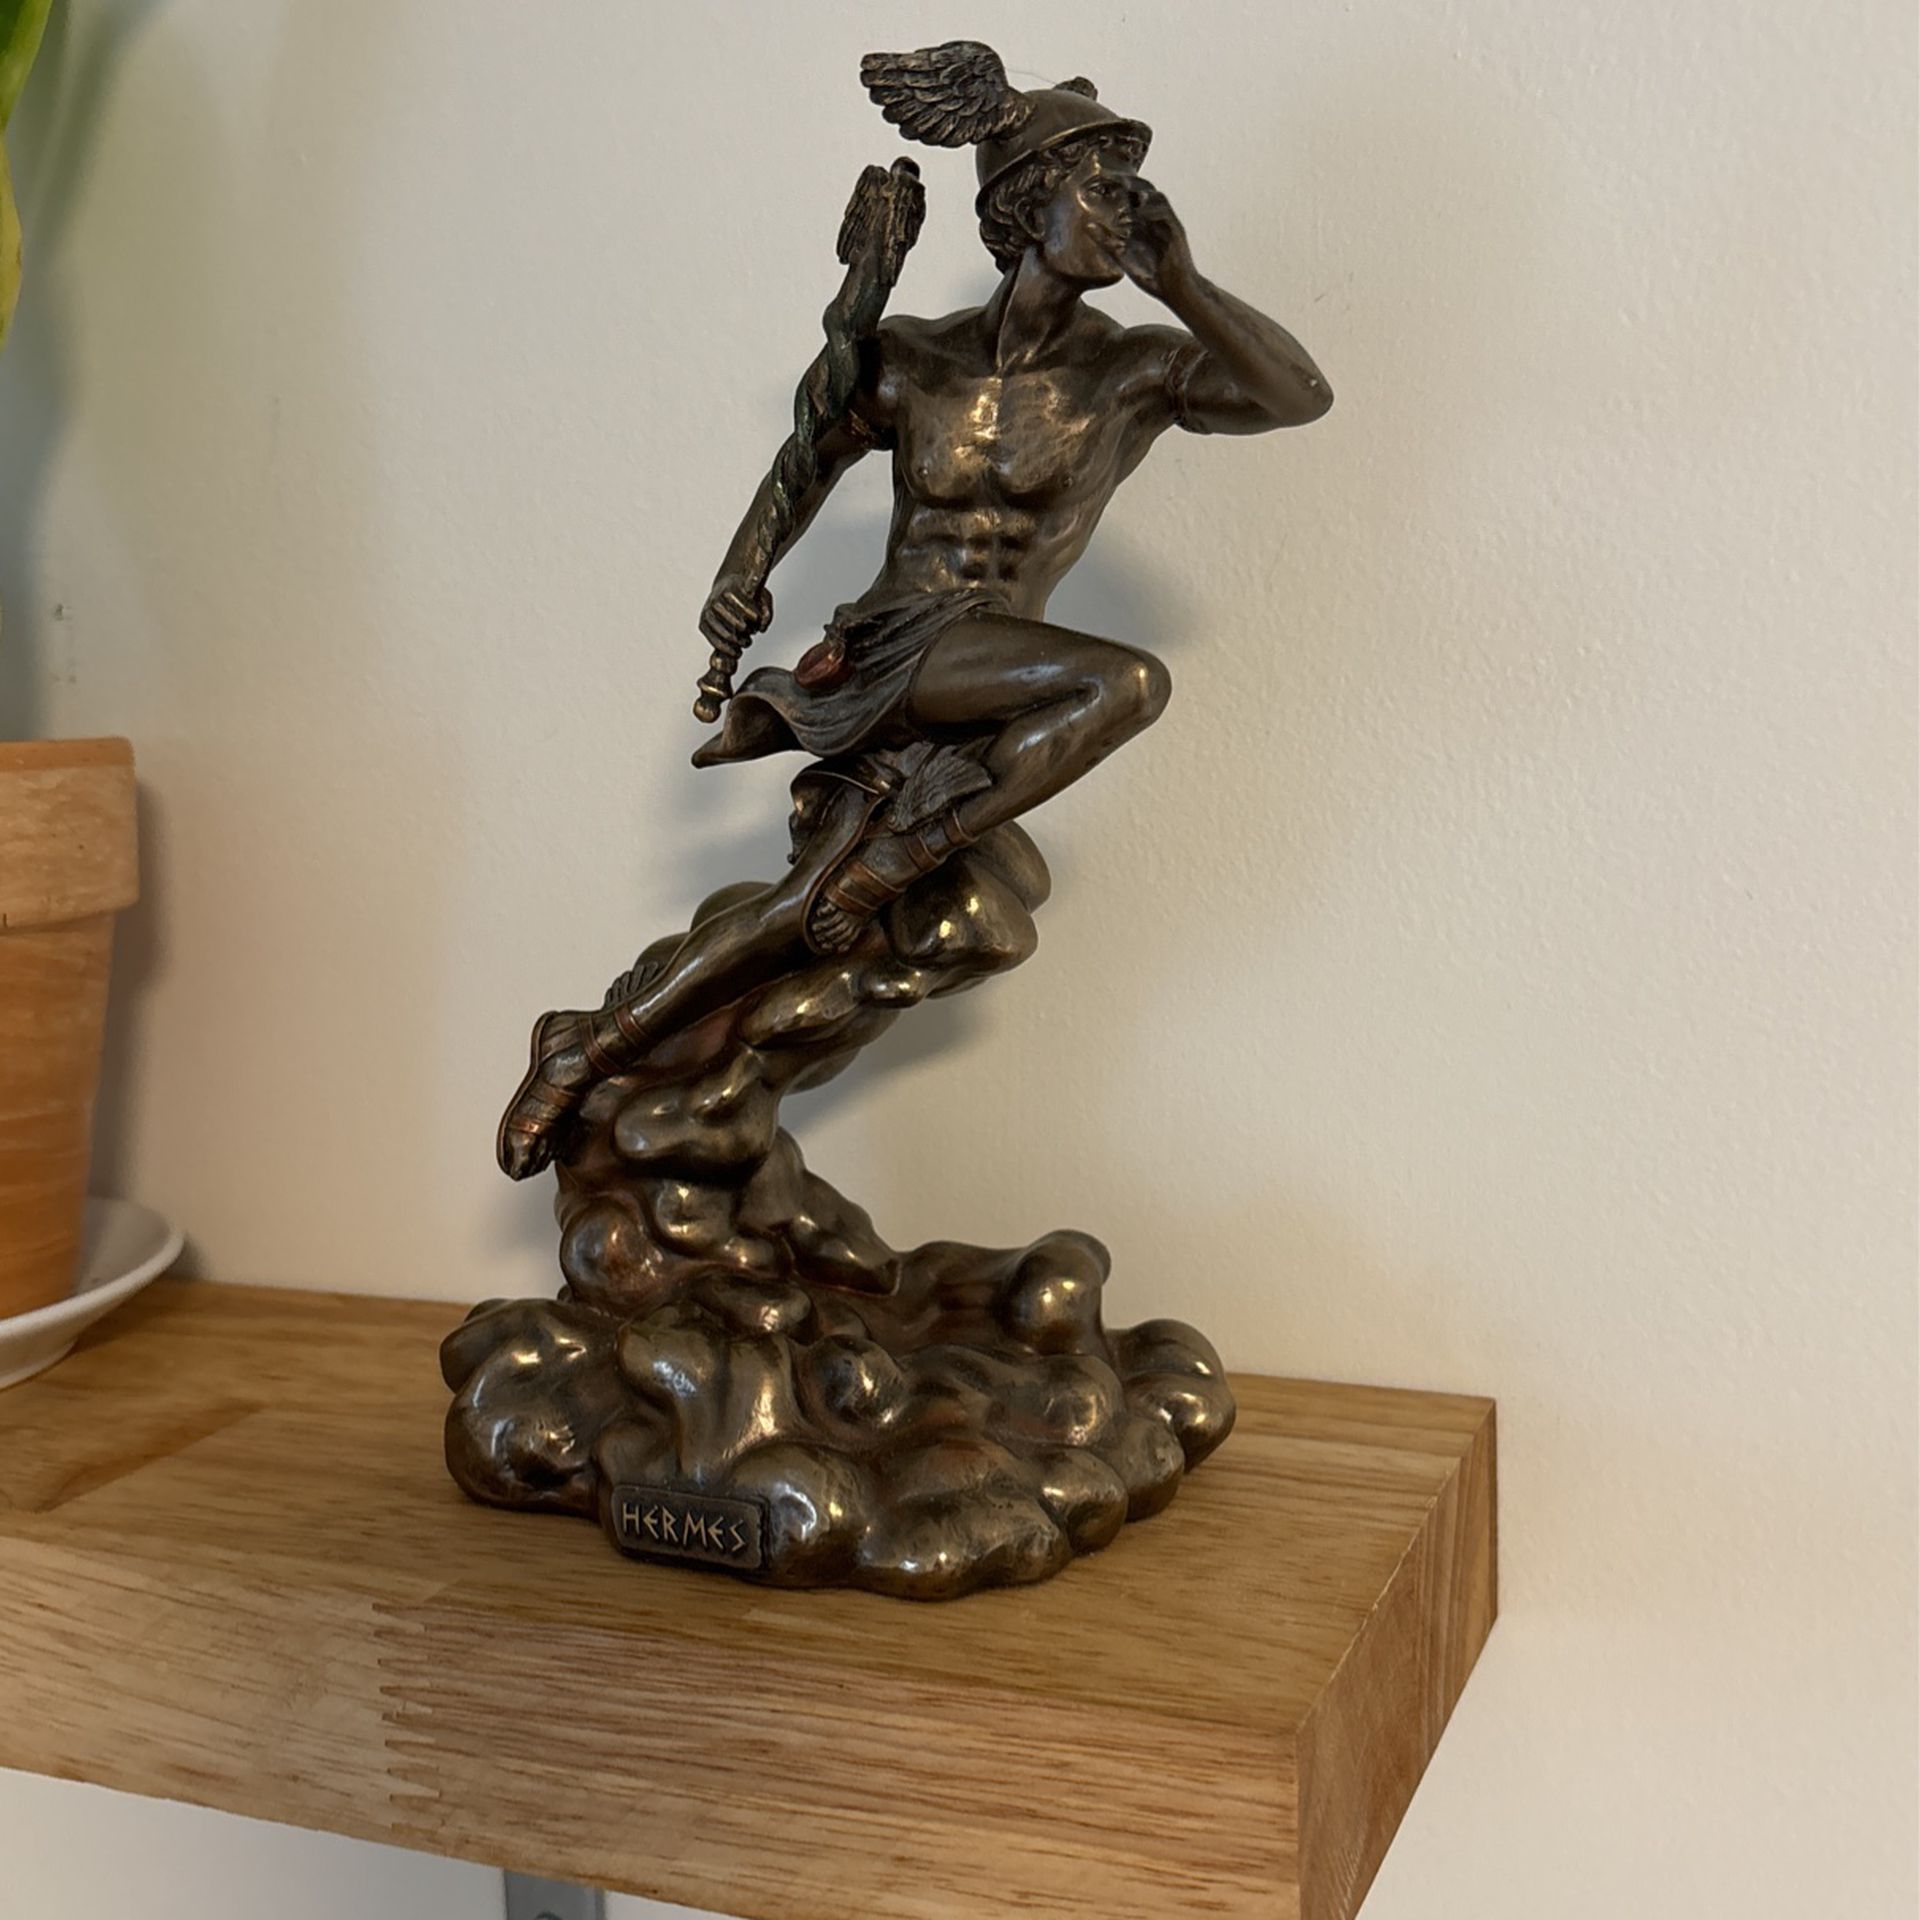 Hermes Statue Veronese design